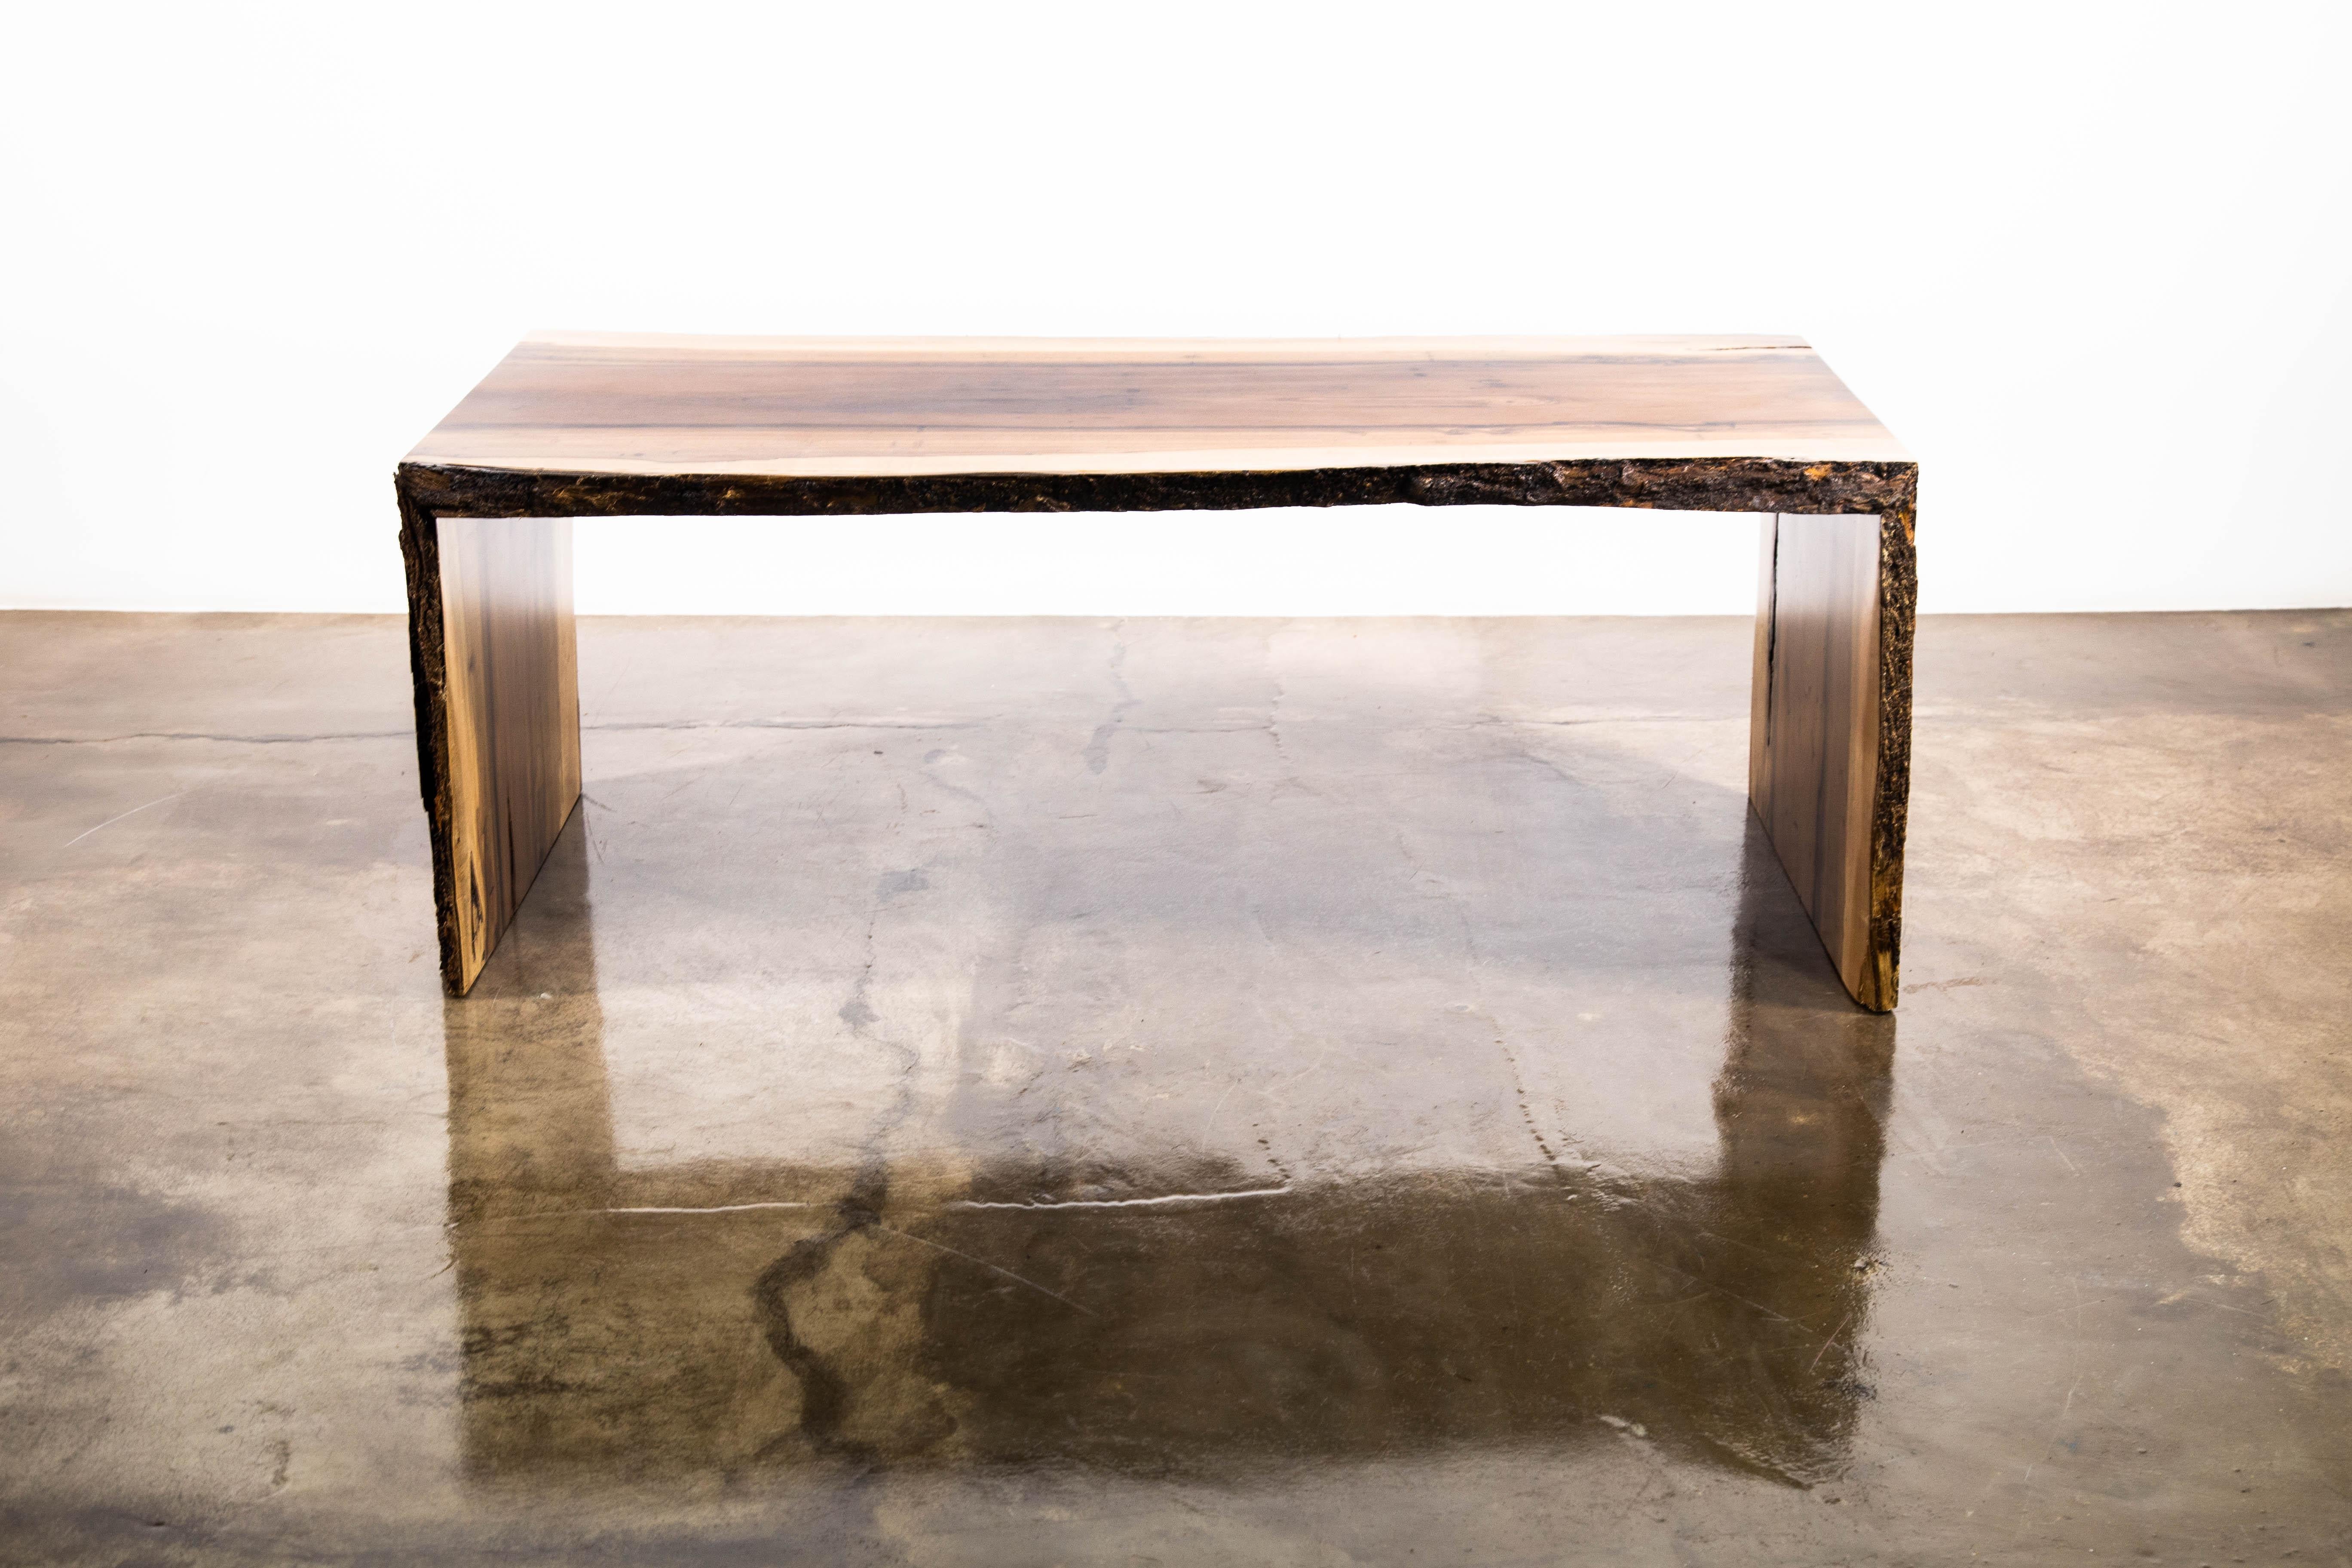 La table Carlo est une table à bord vif de style cascade, fabriquée en bois de rose argentin massif à la finition naturelle. Sa conception minimale laisse la beauté de la nature prendre le devant de la scène. Disponible tel qu'illustré pour une